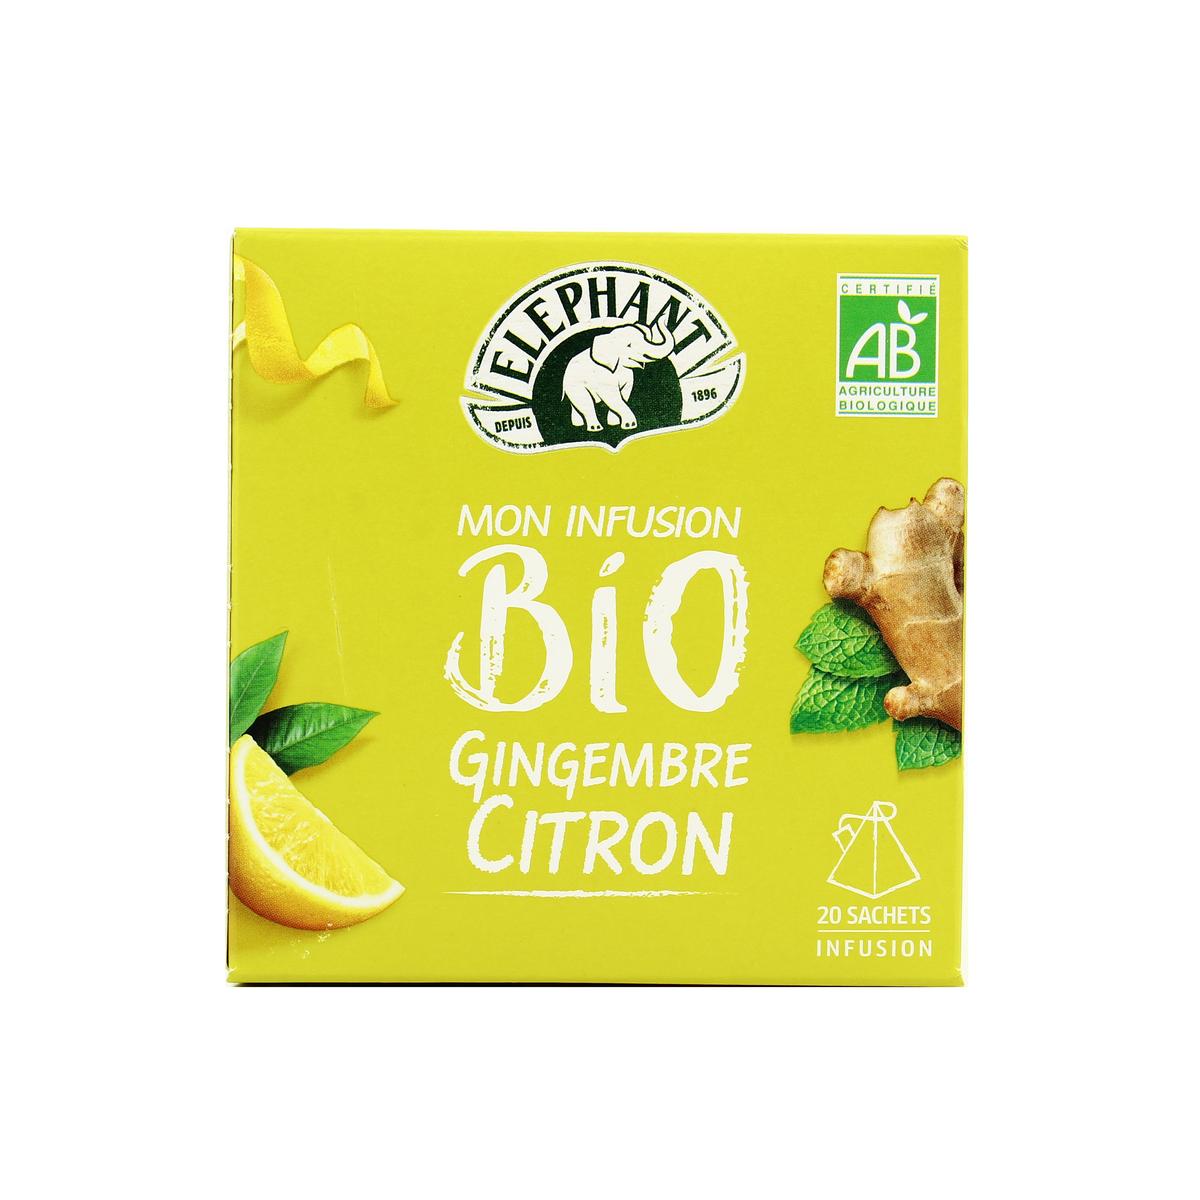 Achat / Vente Elephant Mon infusion gingembre / citron bio, 20 sachets